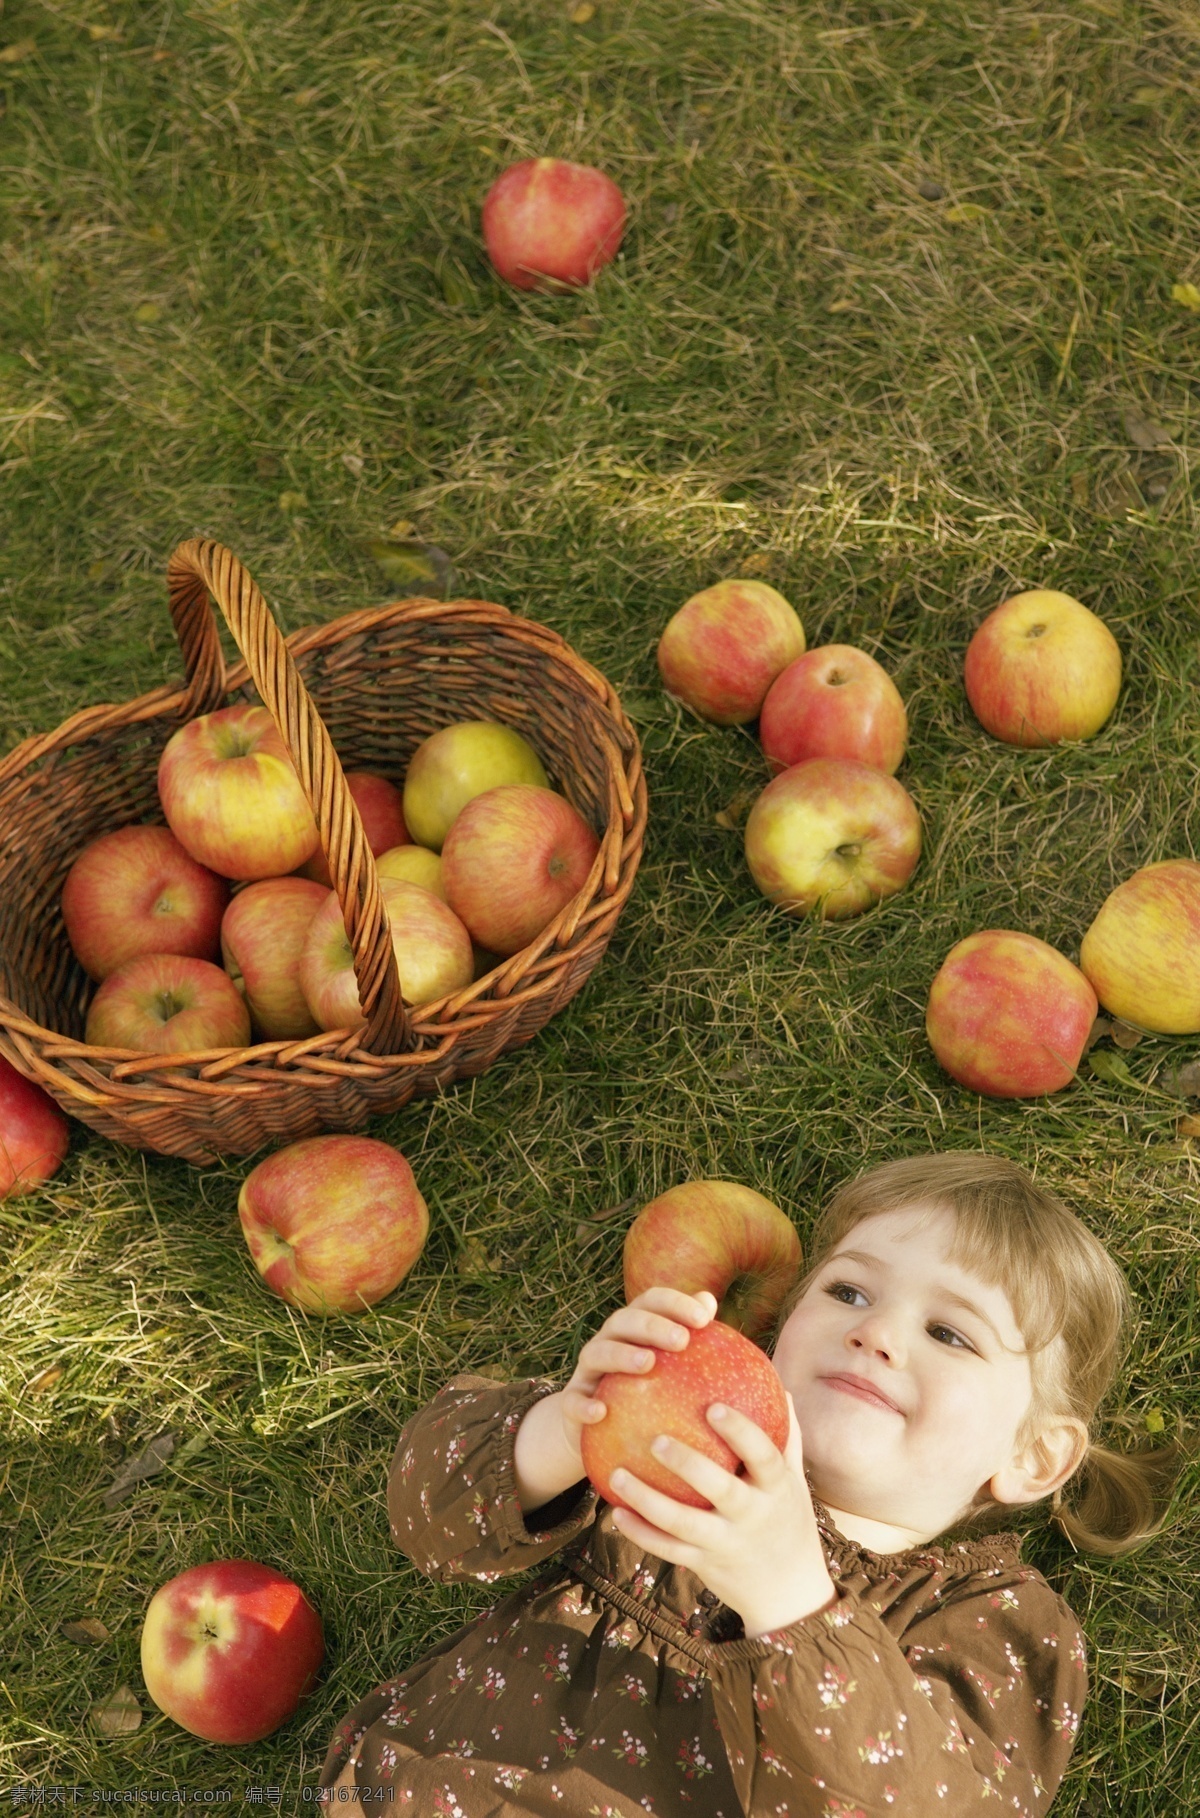 苹果 小女孩 苹果摄影 水果 女孩 儿童 篮子 人物 人物摄影 人物素材 职业人物 生活人物 人物图片